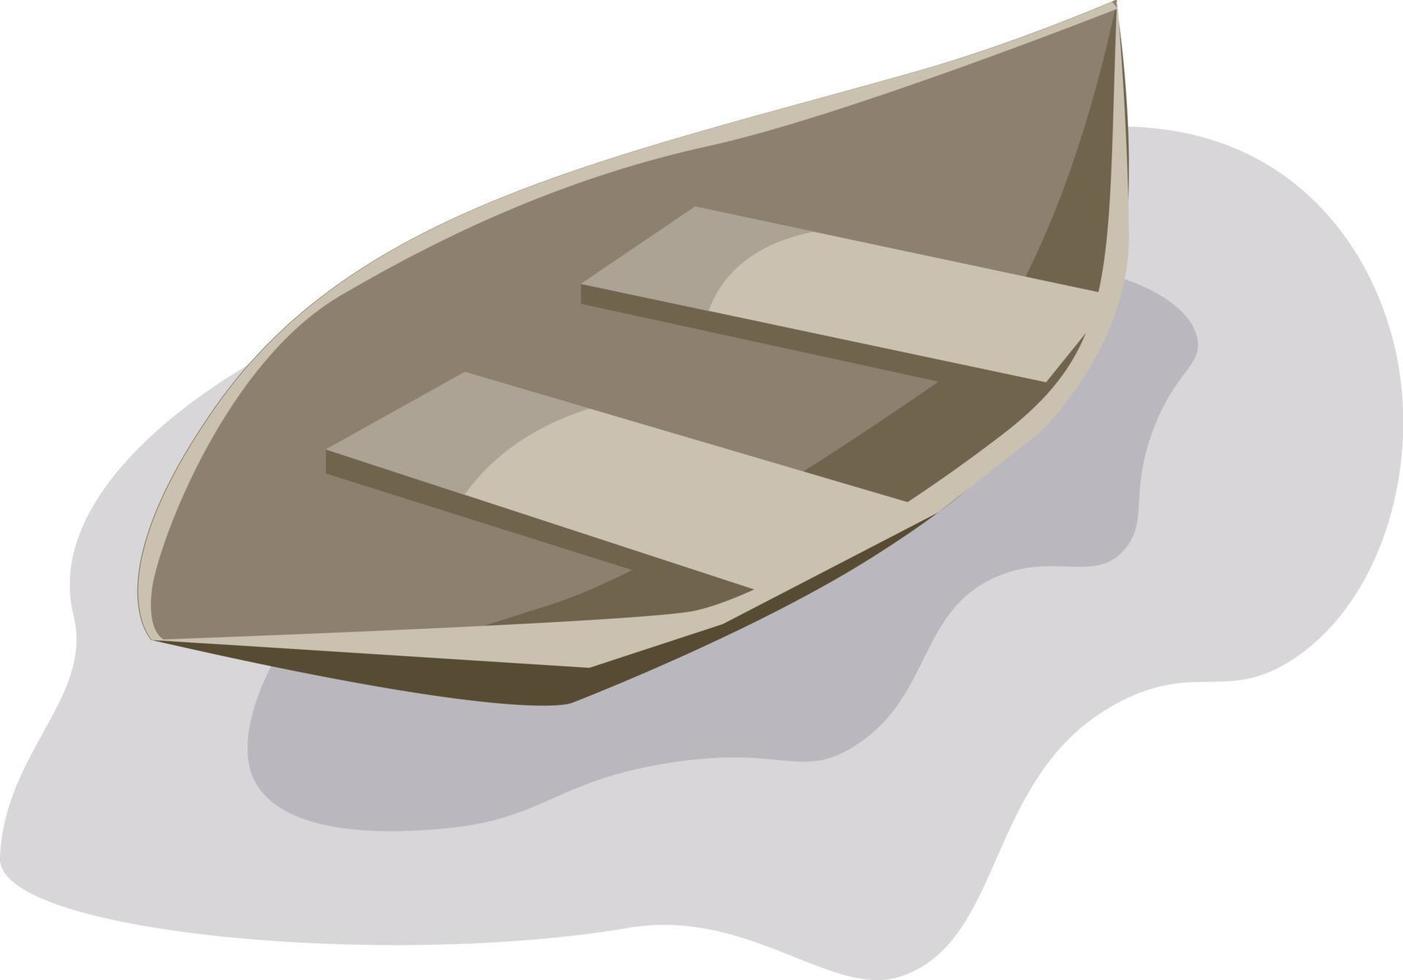 canoë sur l'eau, illustration, vecteur sur fond blanc.